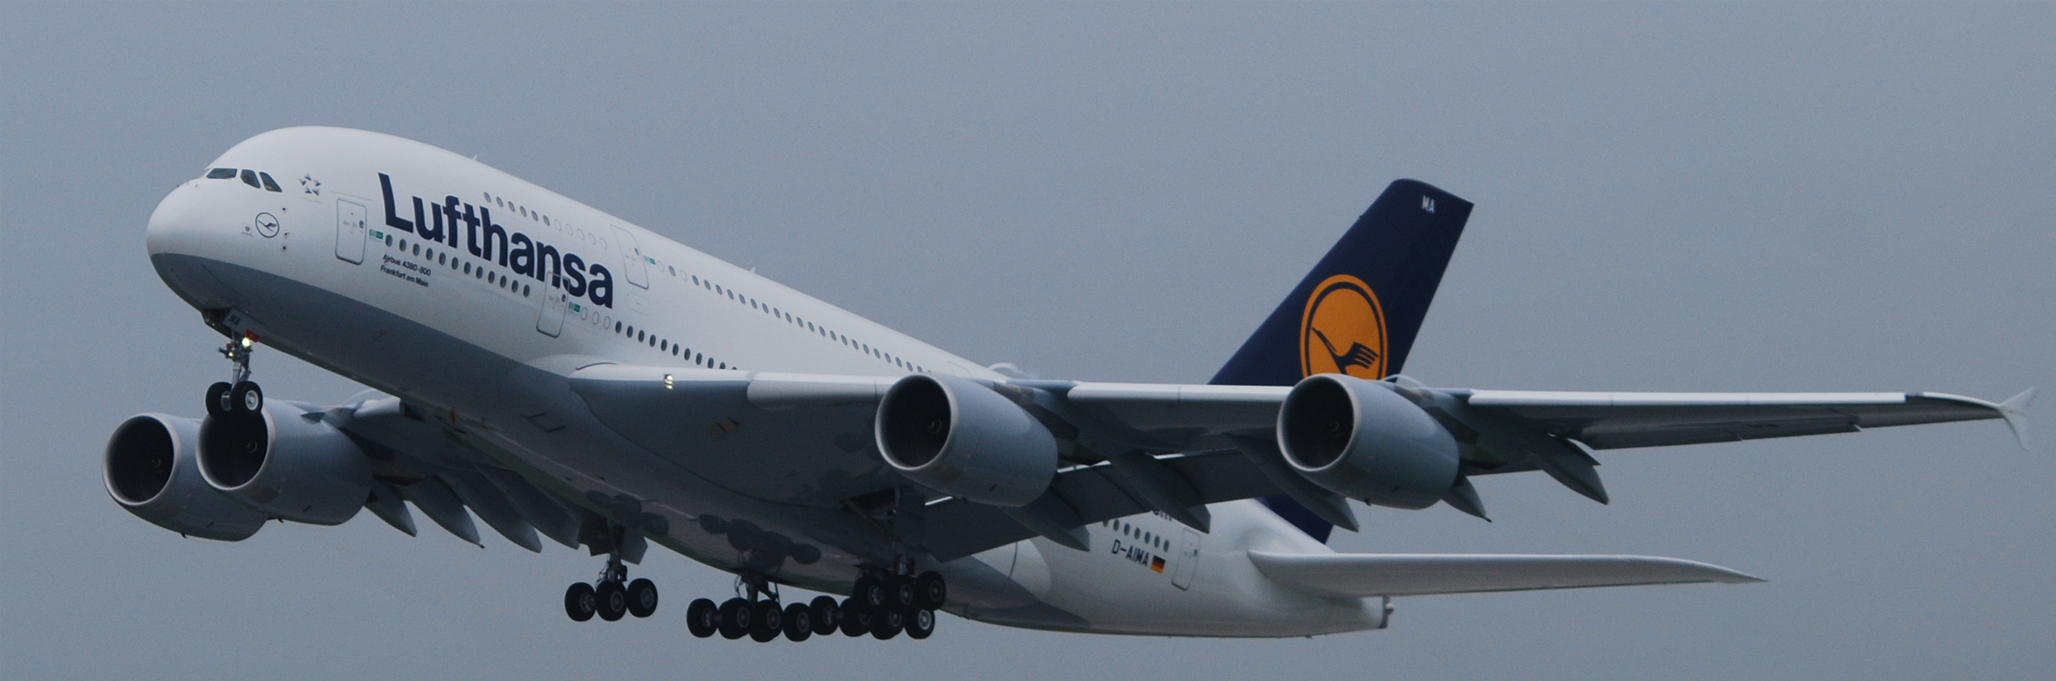 A380 Makes Surprise Visit to DFW